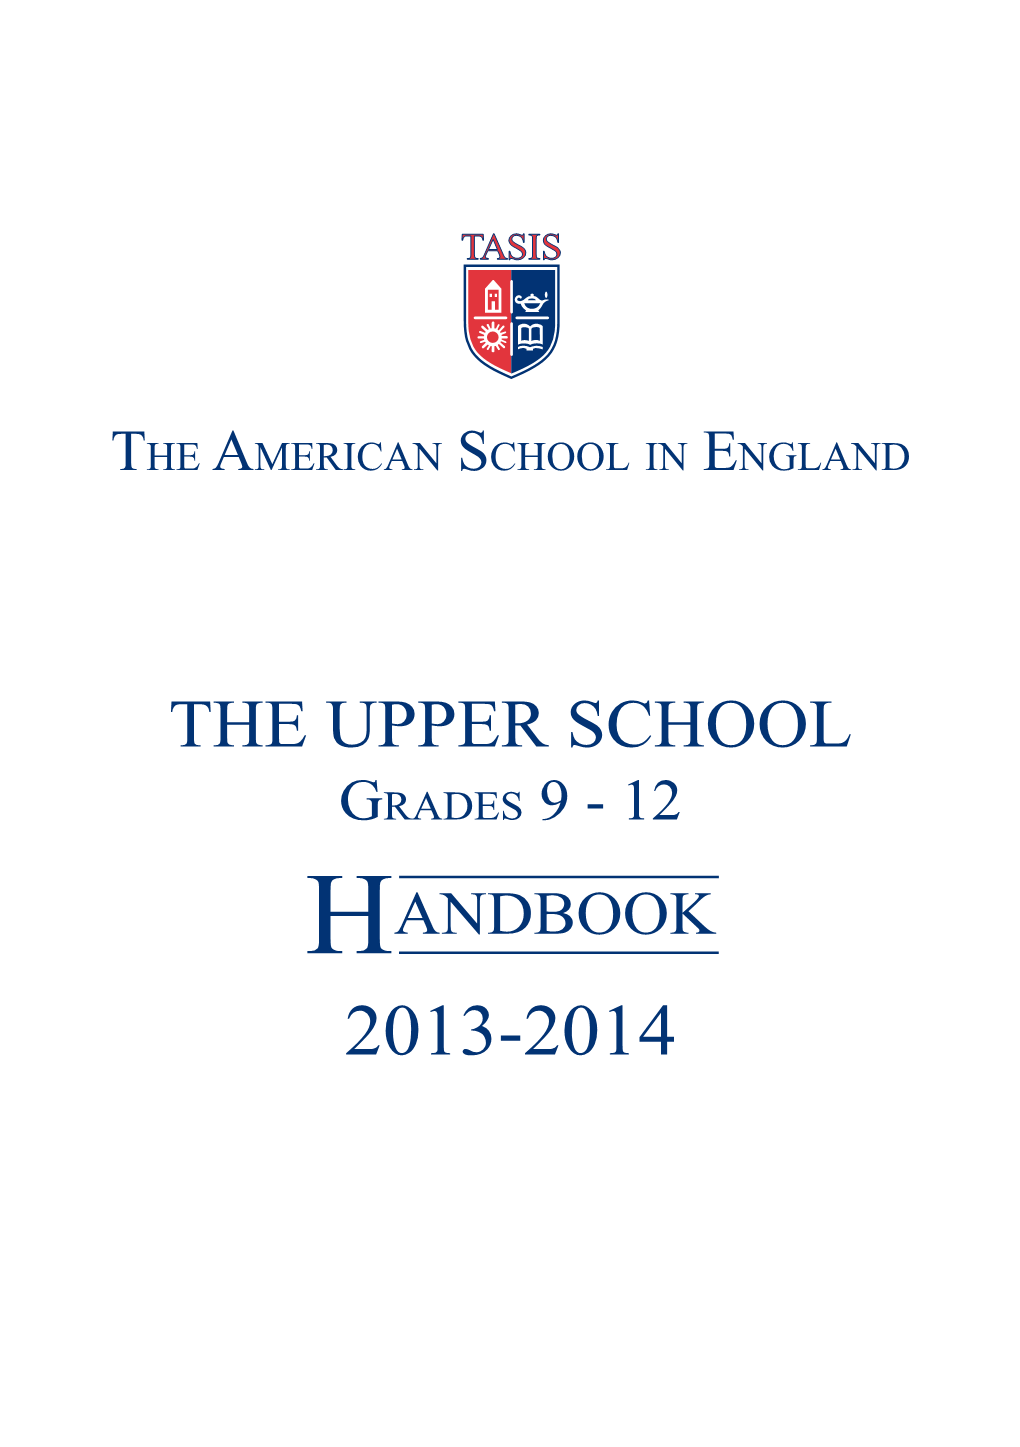 The Upper School Grades 9 - 12 Handbook 2013-2014